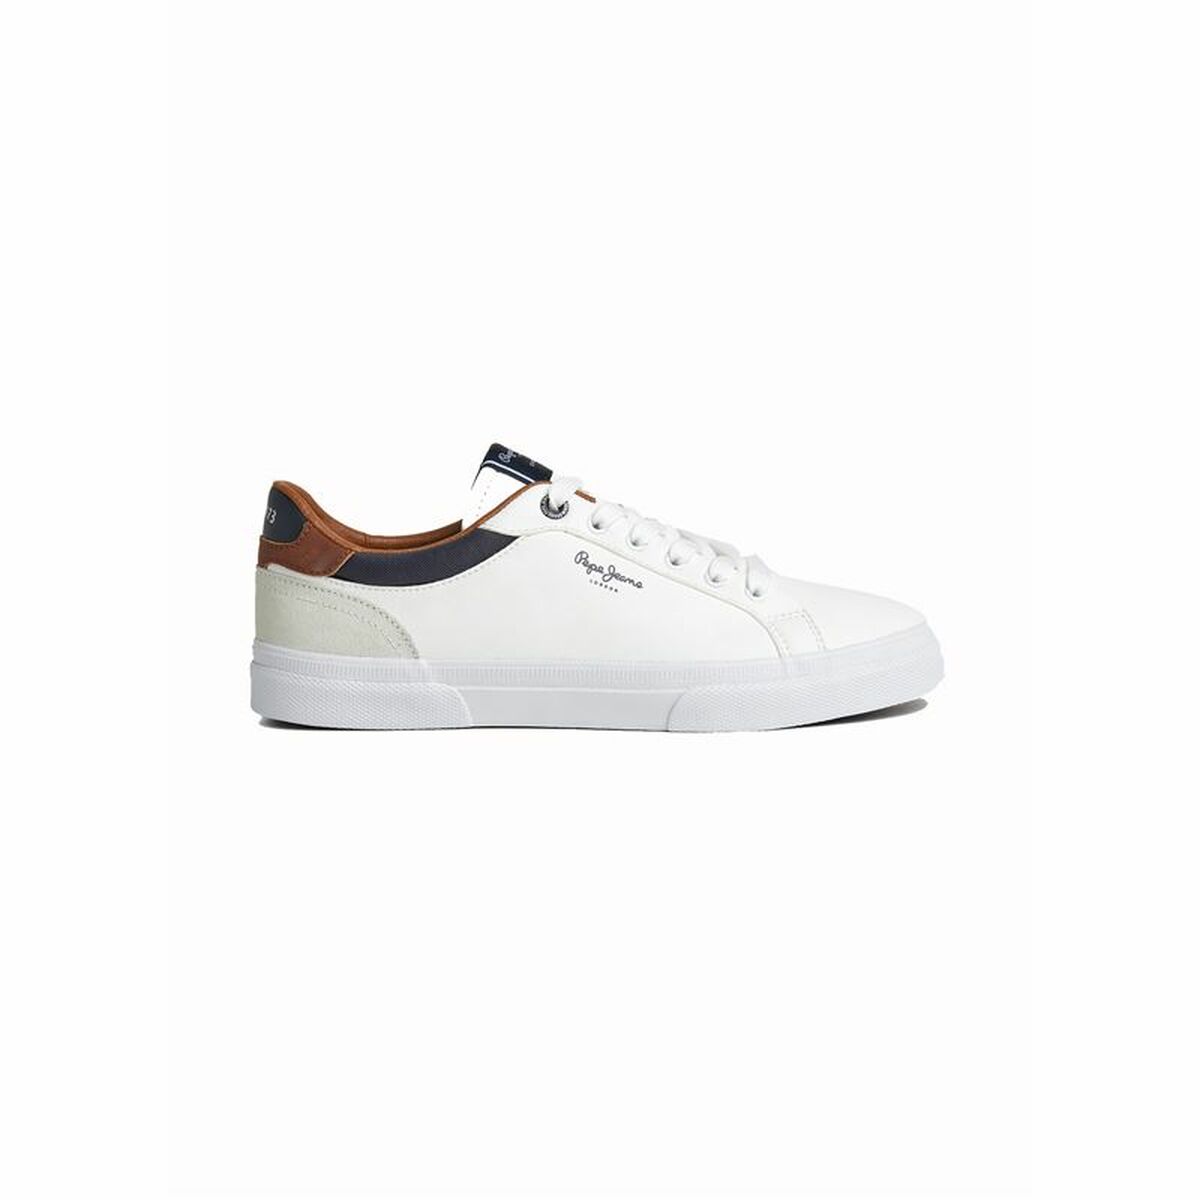 Chaussures de Sport pour Homme Pepe Jeans Kenton Court Bleu/Blanc